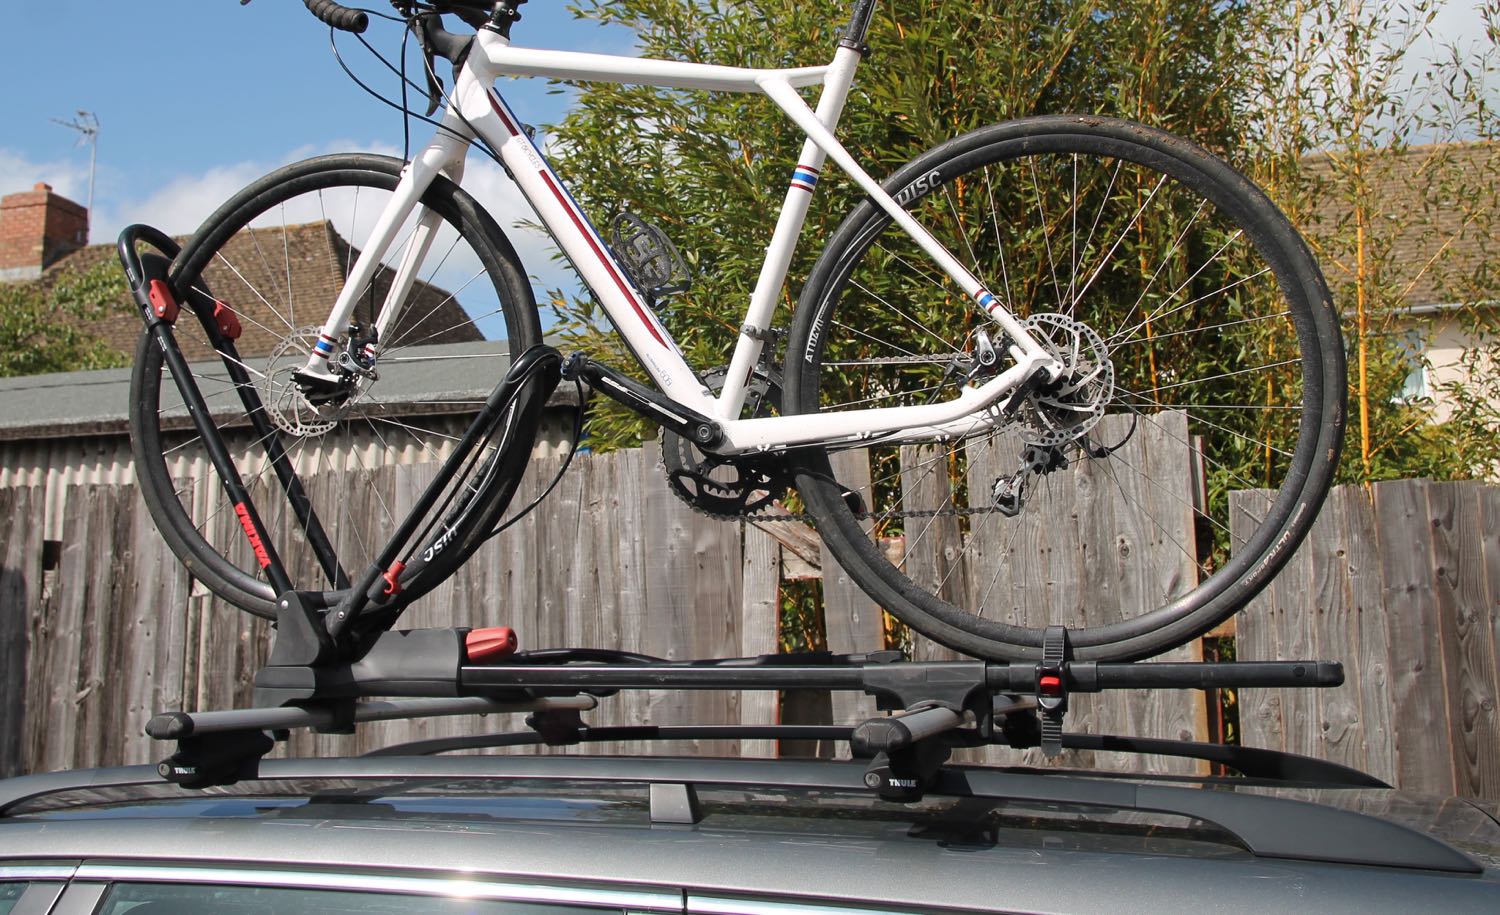 yakima frontloader rooftop bike rack